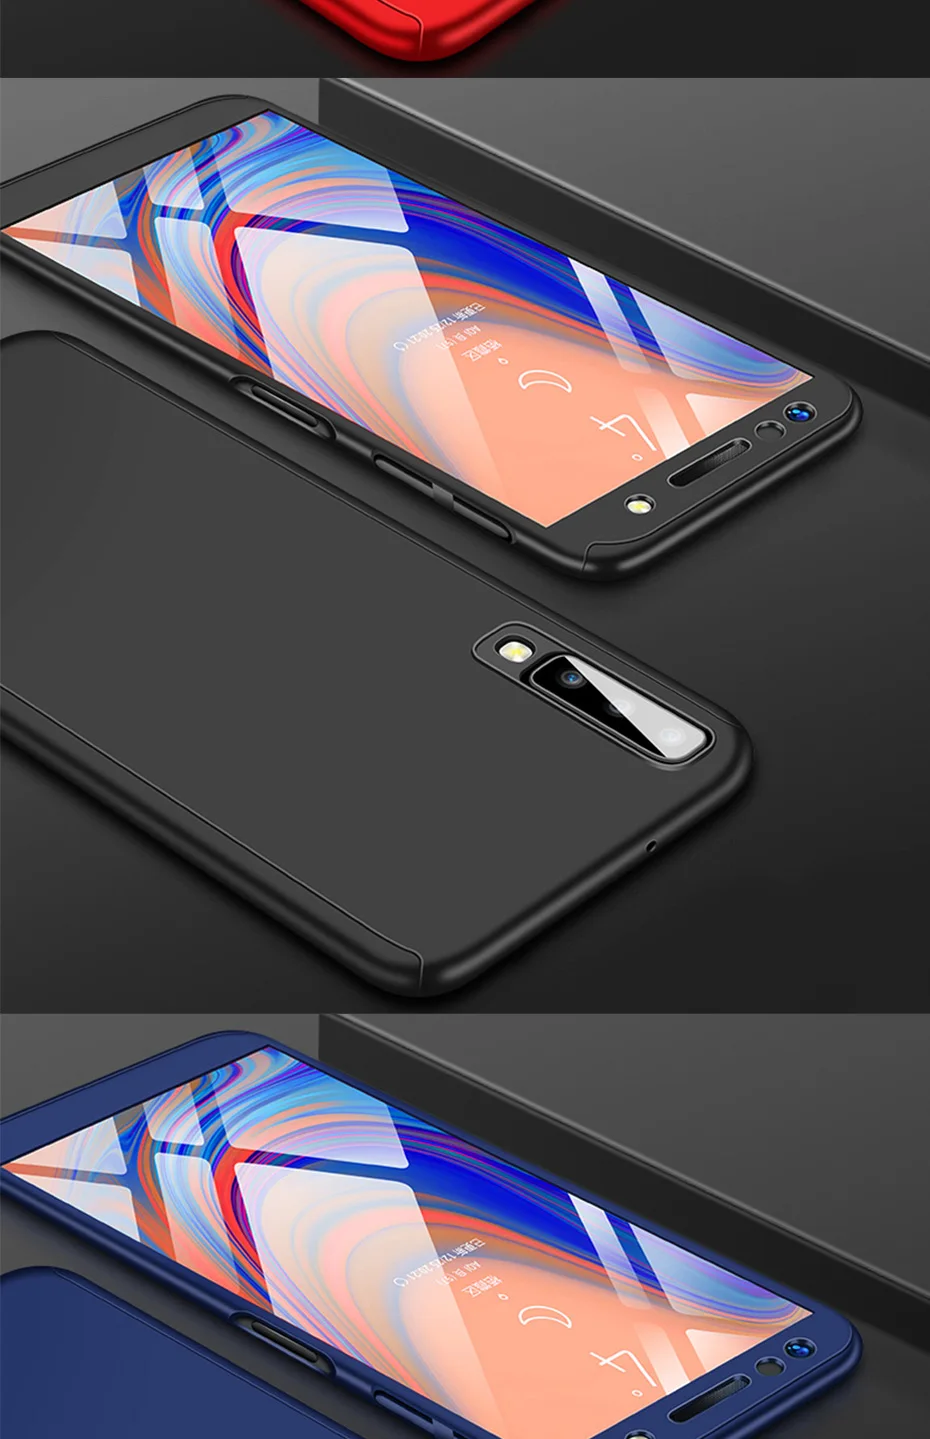 Luxury Case For Samsung Galaxy A70 A60 A50 A40 A30 A20 S10 E S9 S8 Plus S7 S6 Edge J3 J5 J7 A7 A5 A3 360 Phone Cover Cases